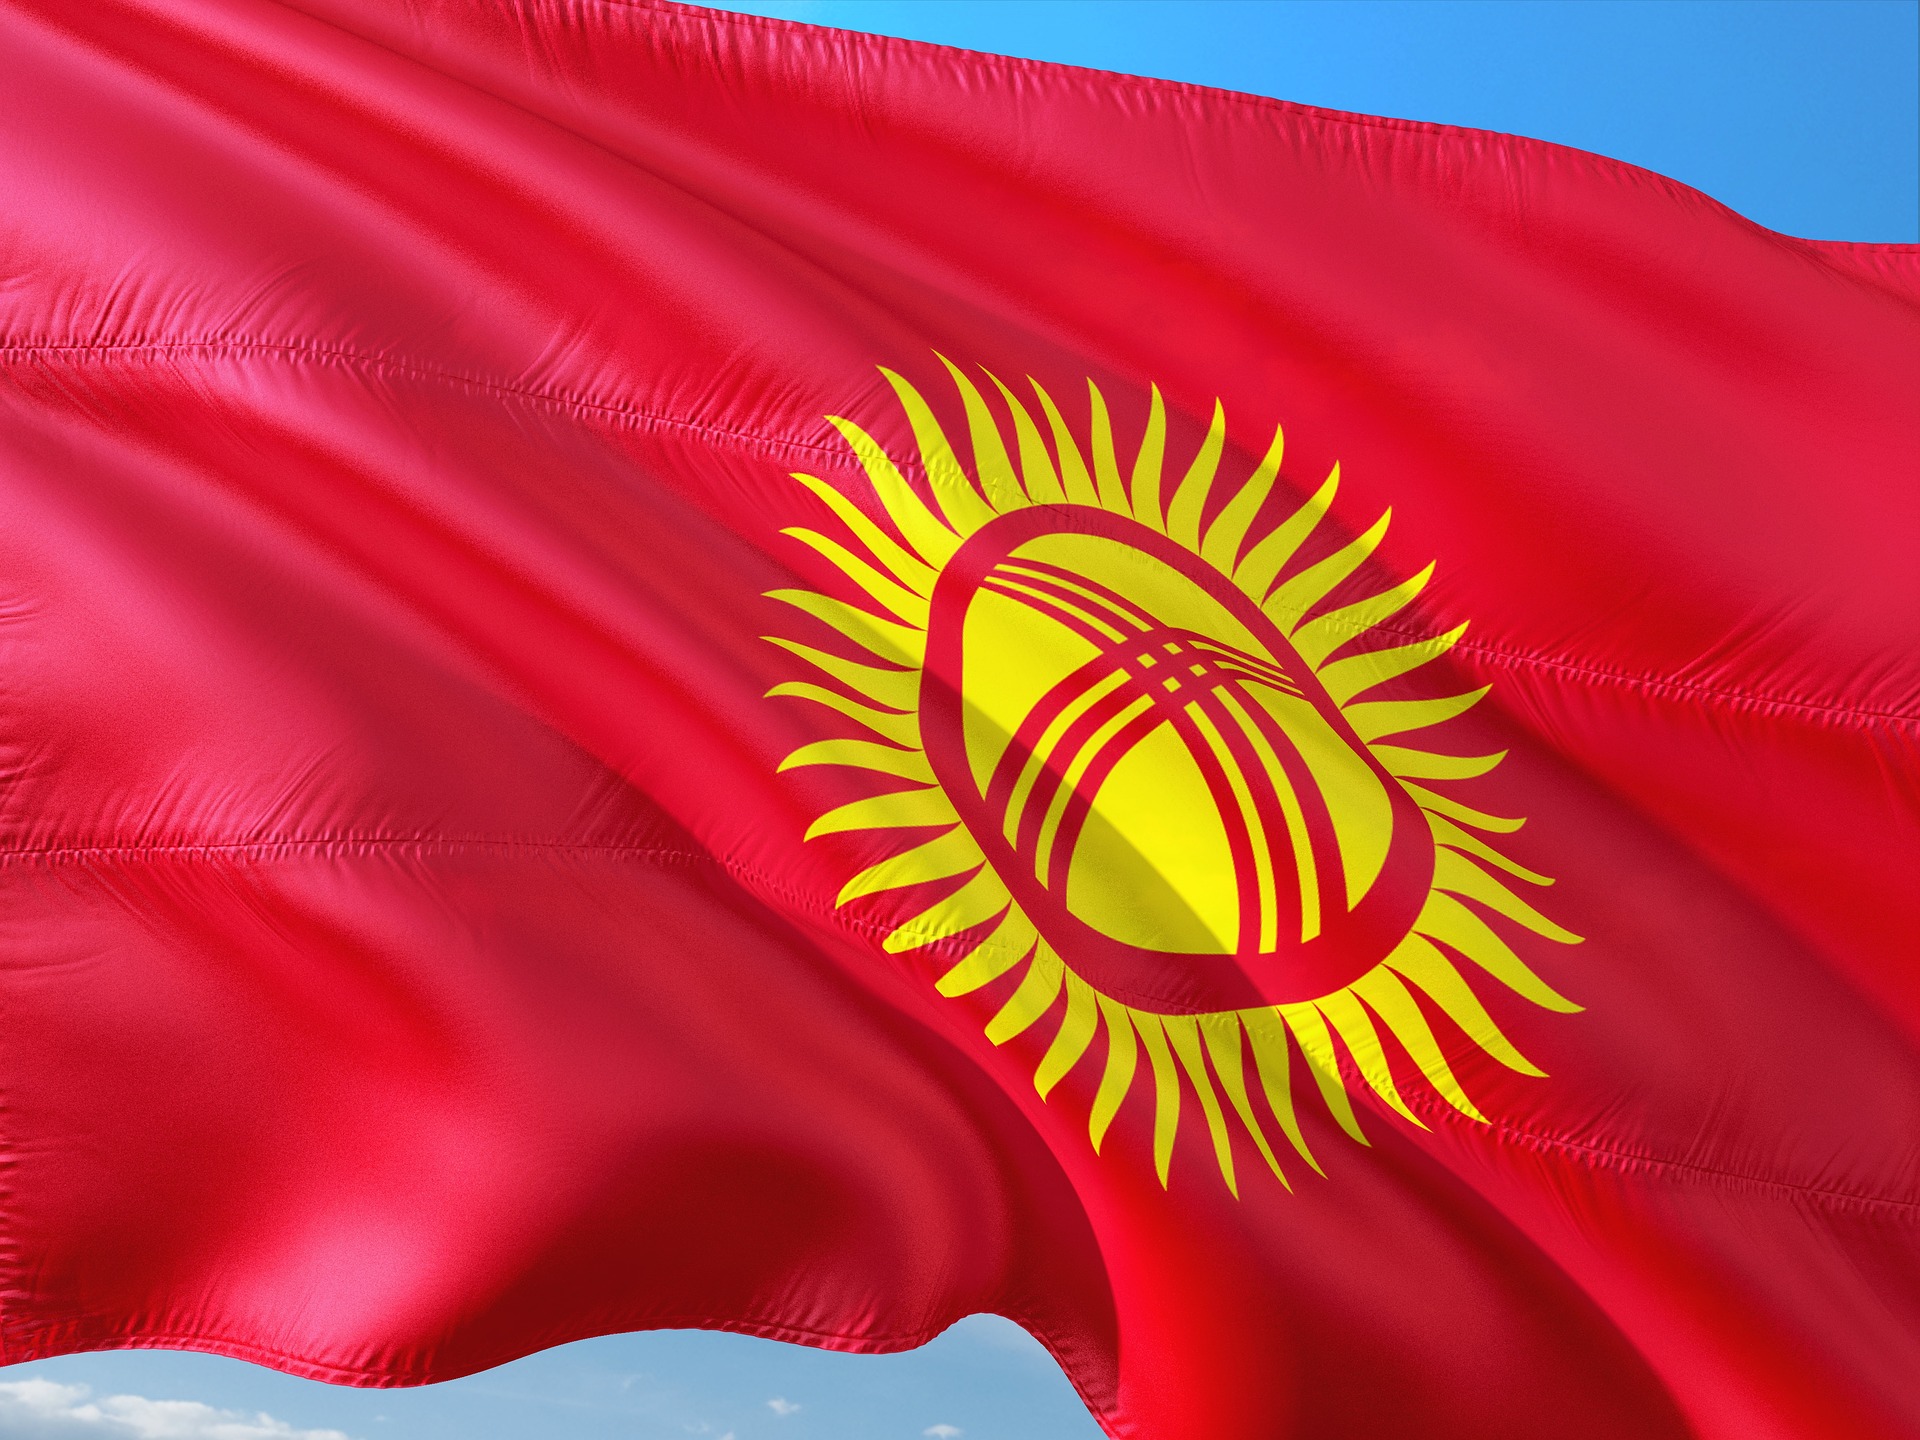 Kyrgyzstan's Flag